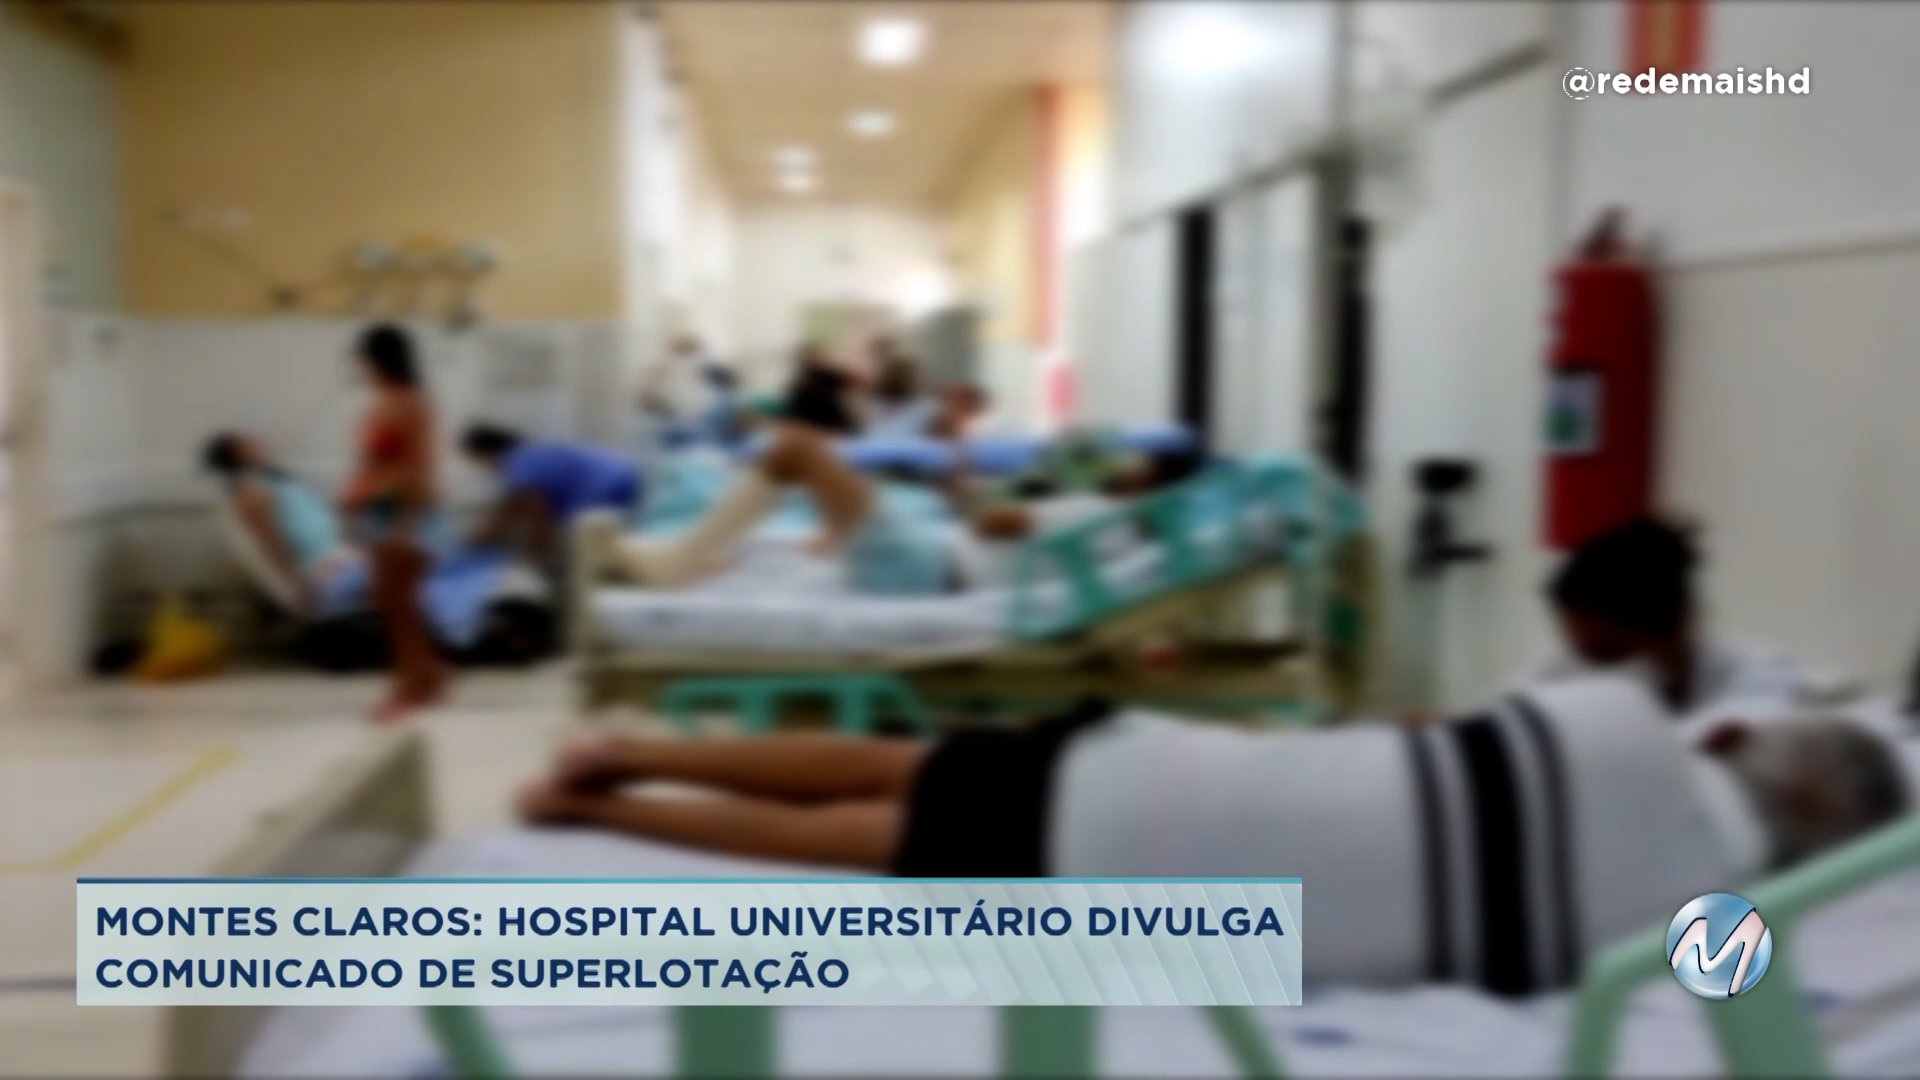 Superlotação: Hospital Universitário de Montes Claros divulga comunicado